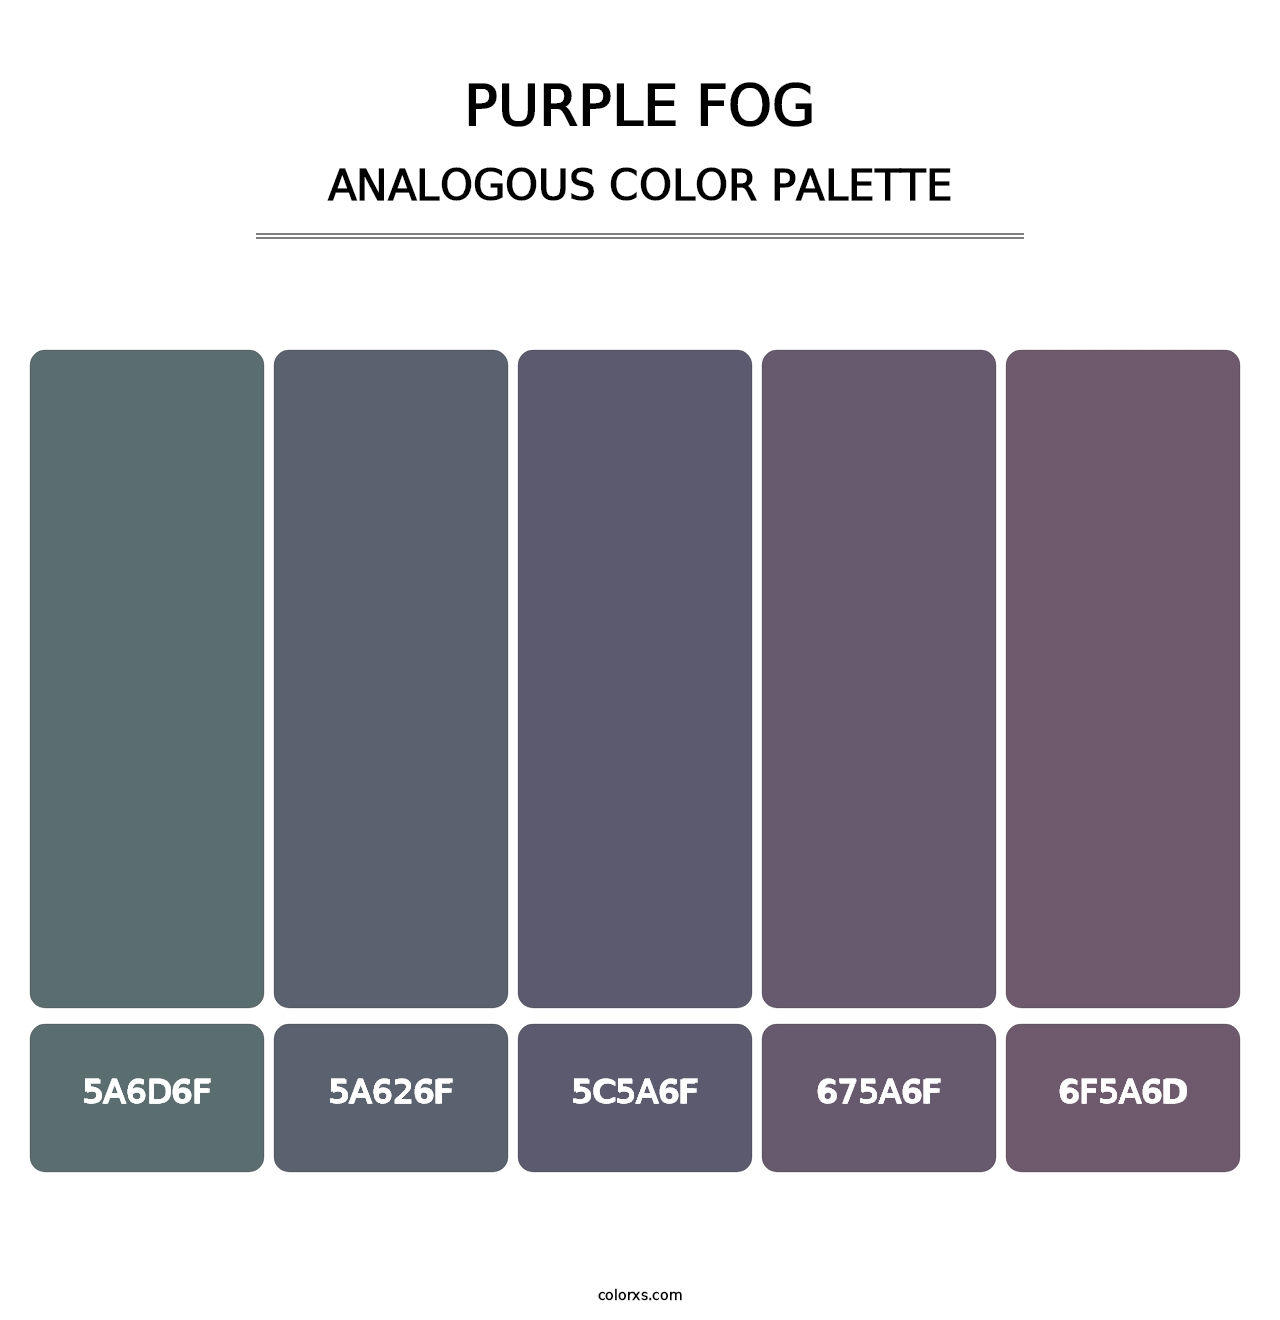 Purple Fog - Analogous Color Palette